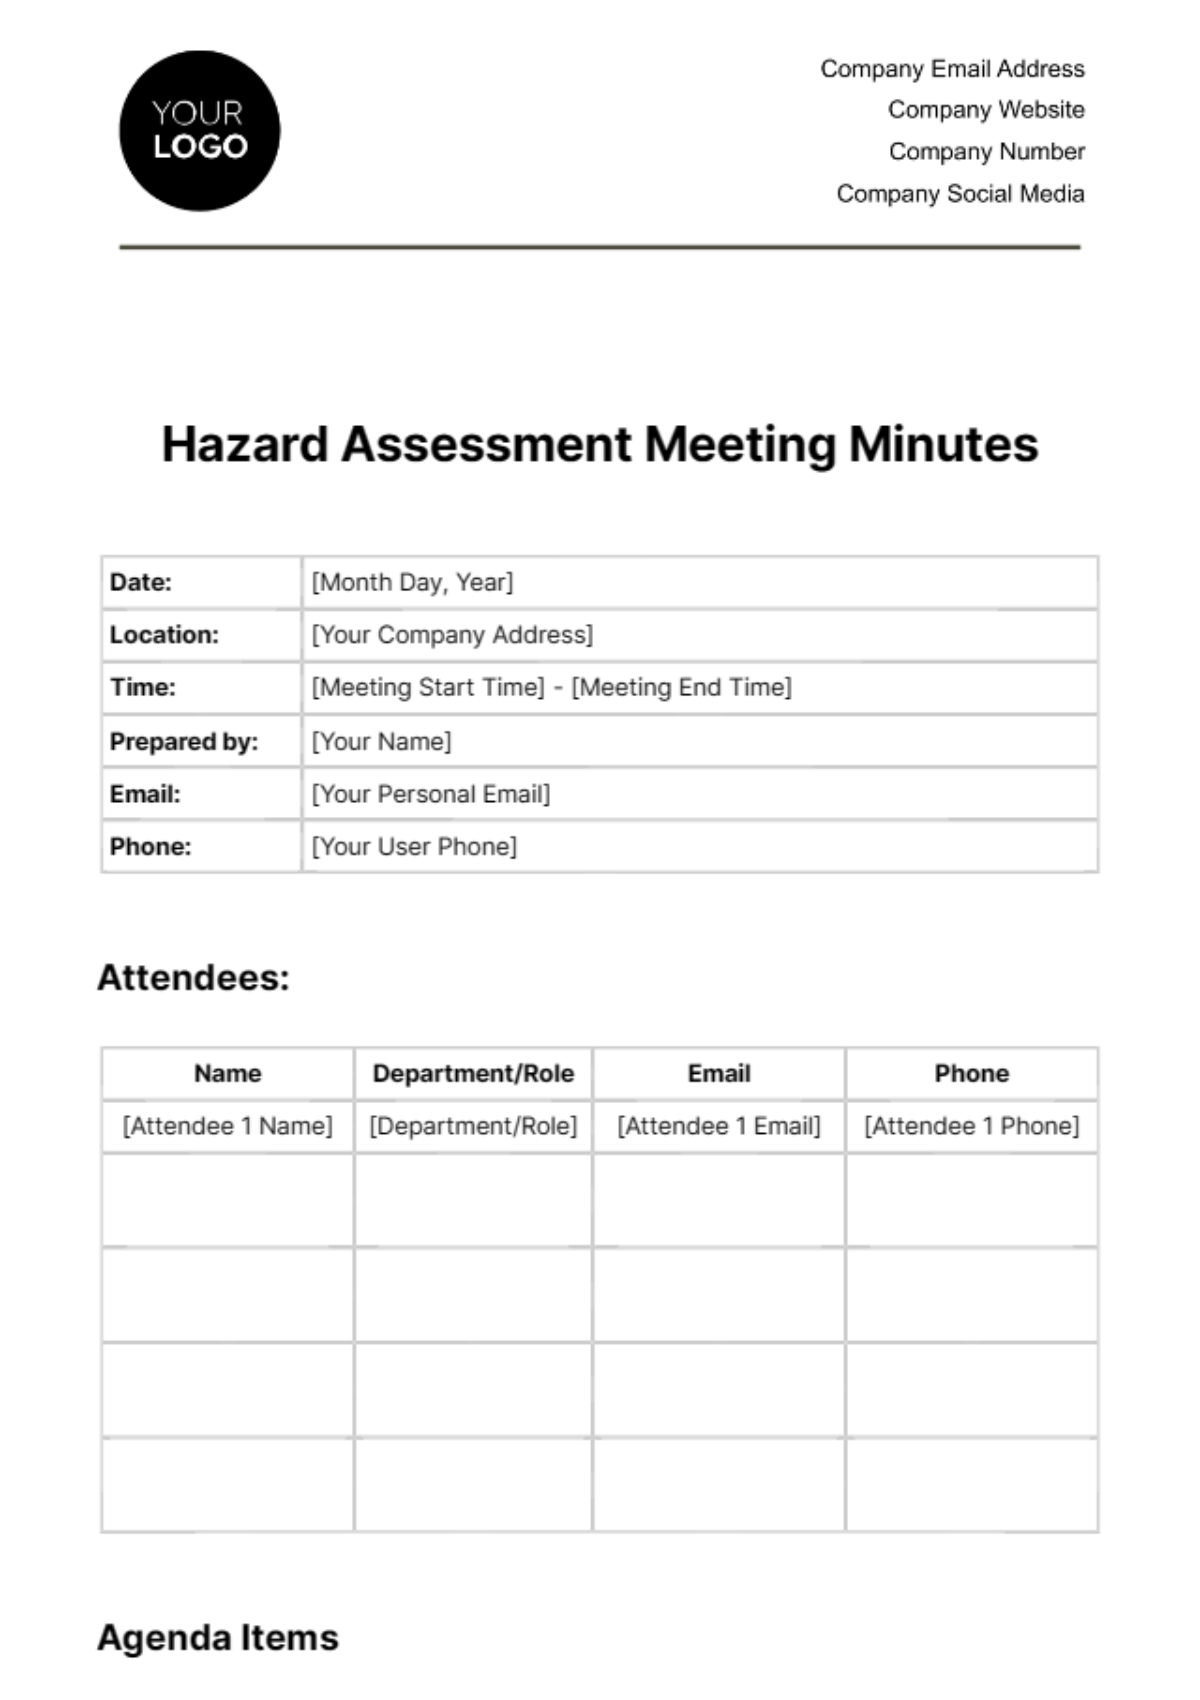 Hazard Assessment Meeting Minutes Template